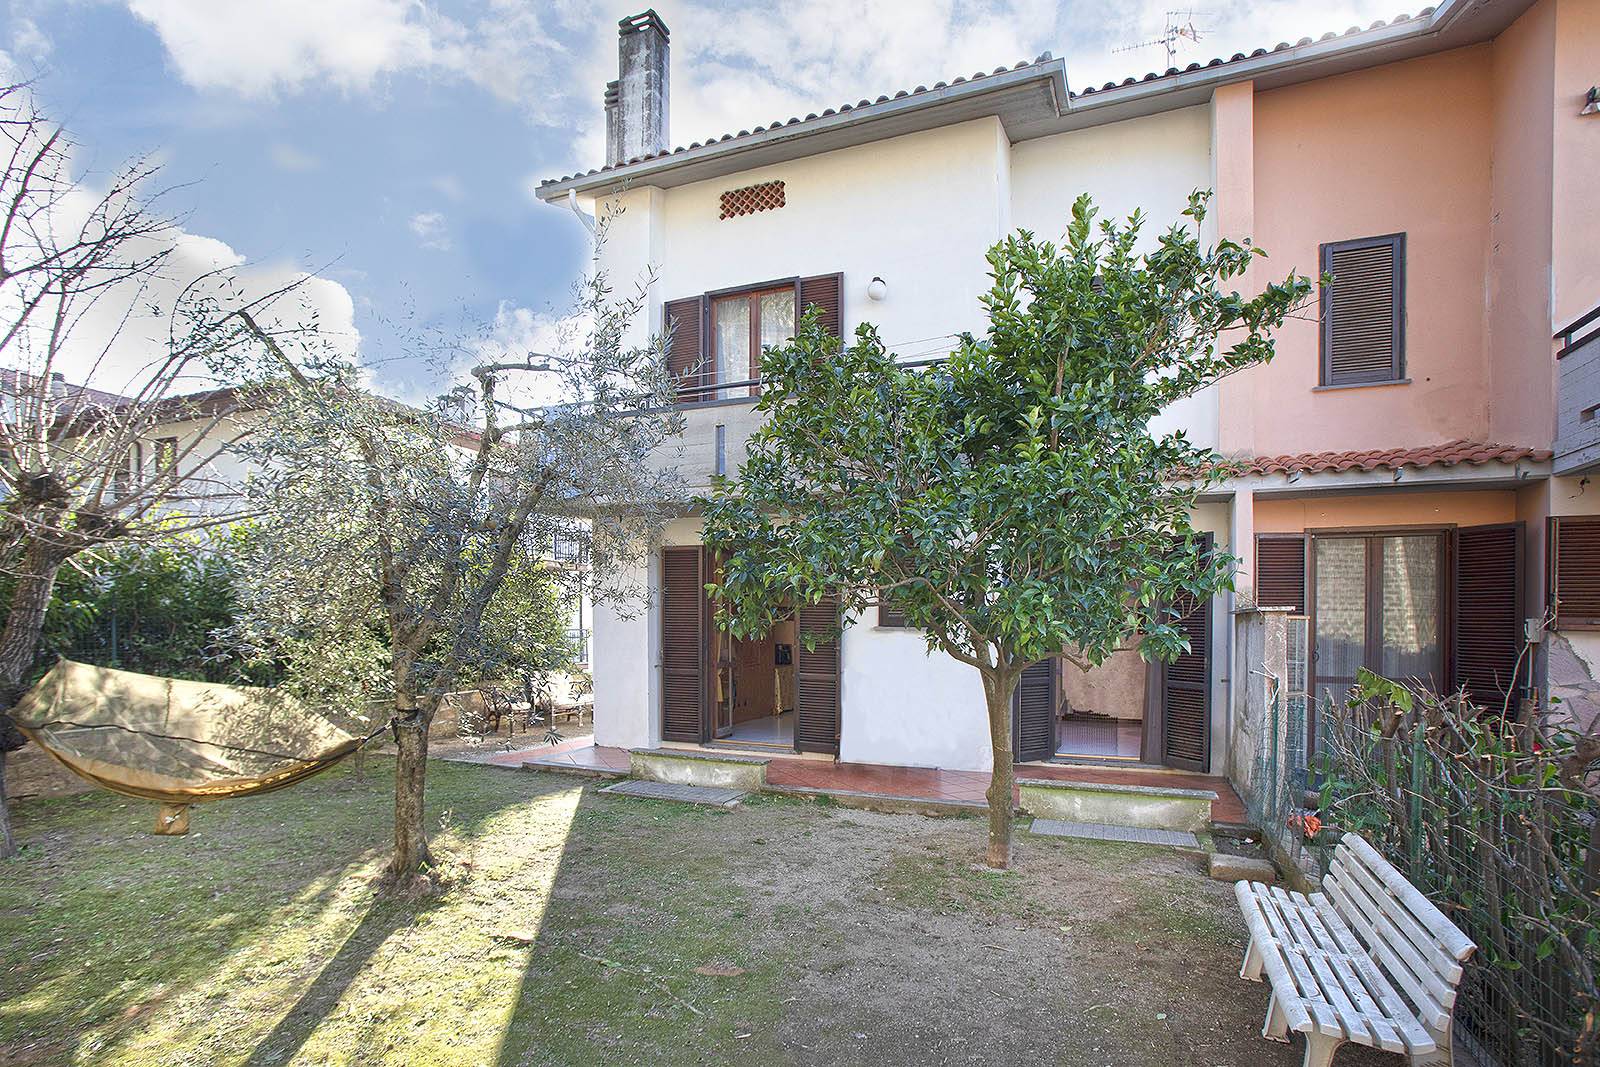 Villa in vendita a Canino, 5 locali, prezzo € 178.000 | PortaleAgenzieImmobiliari.it